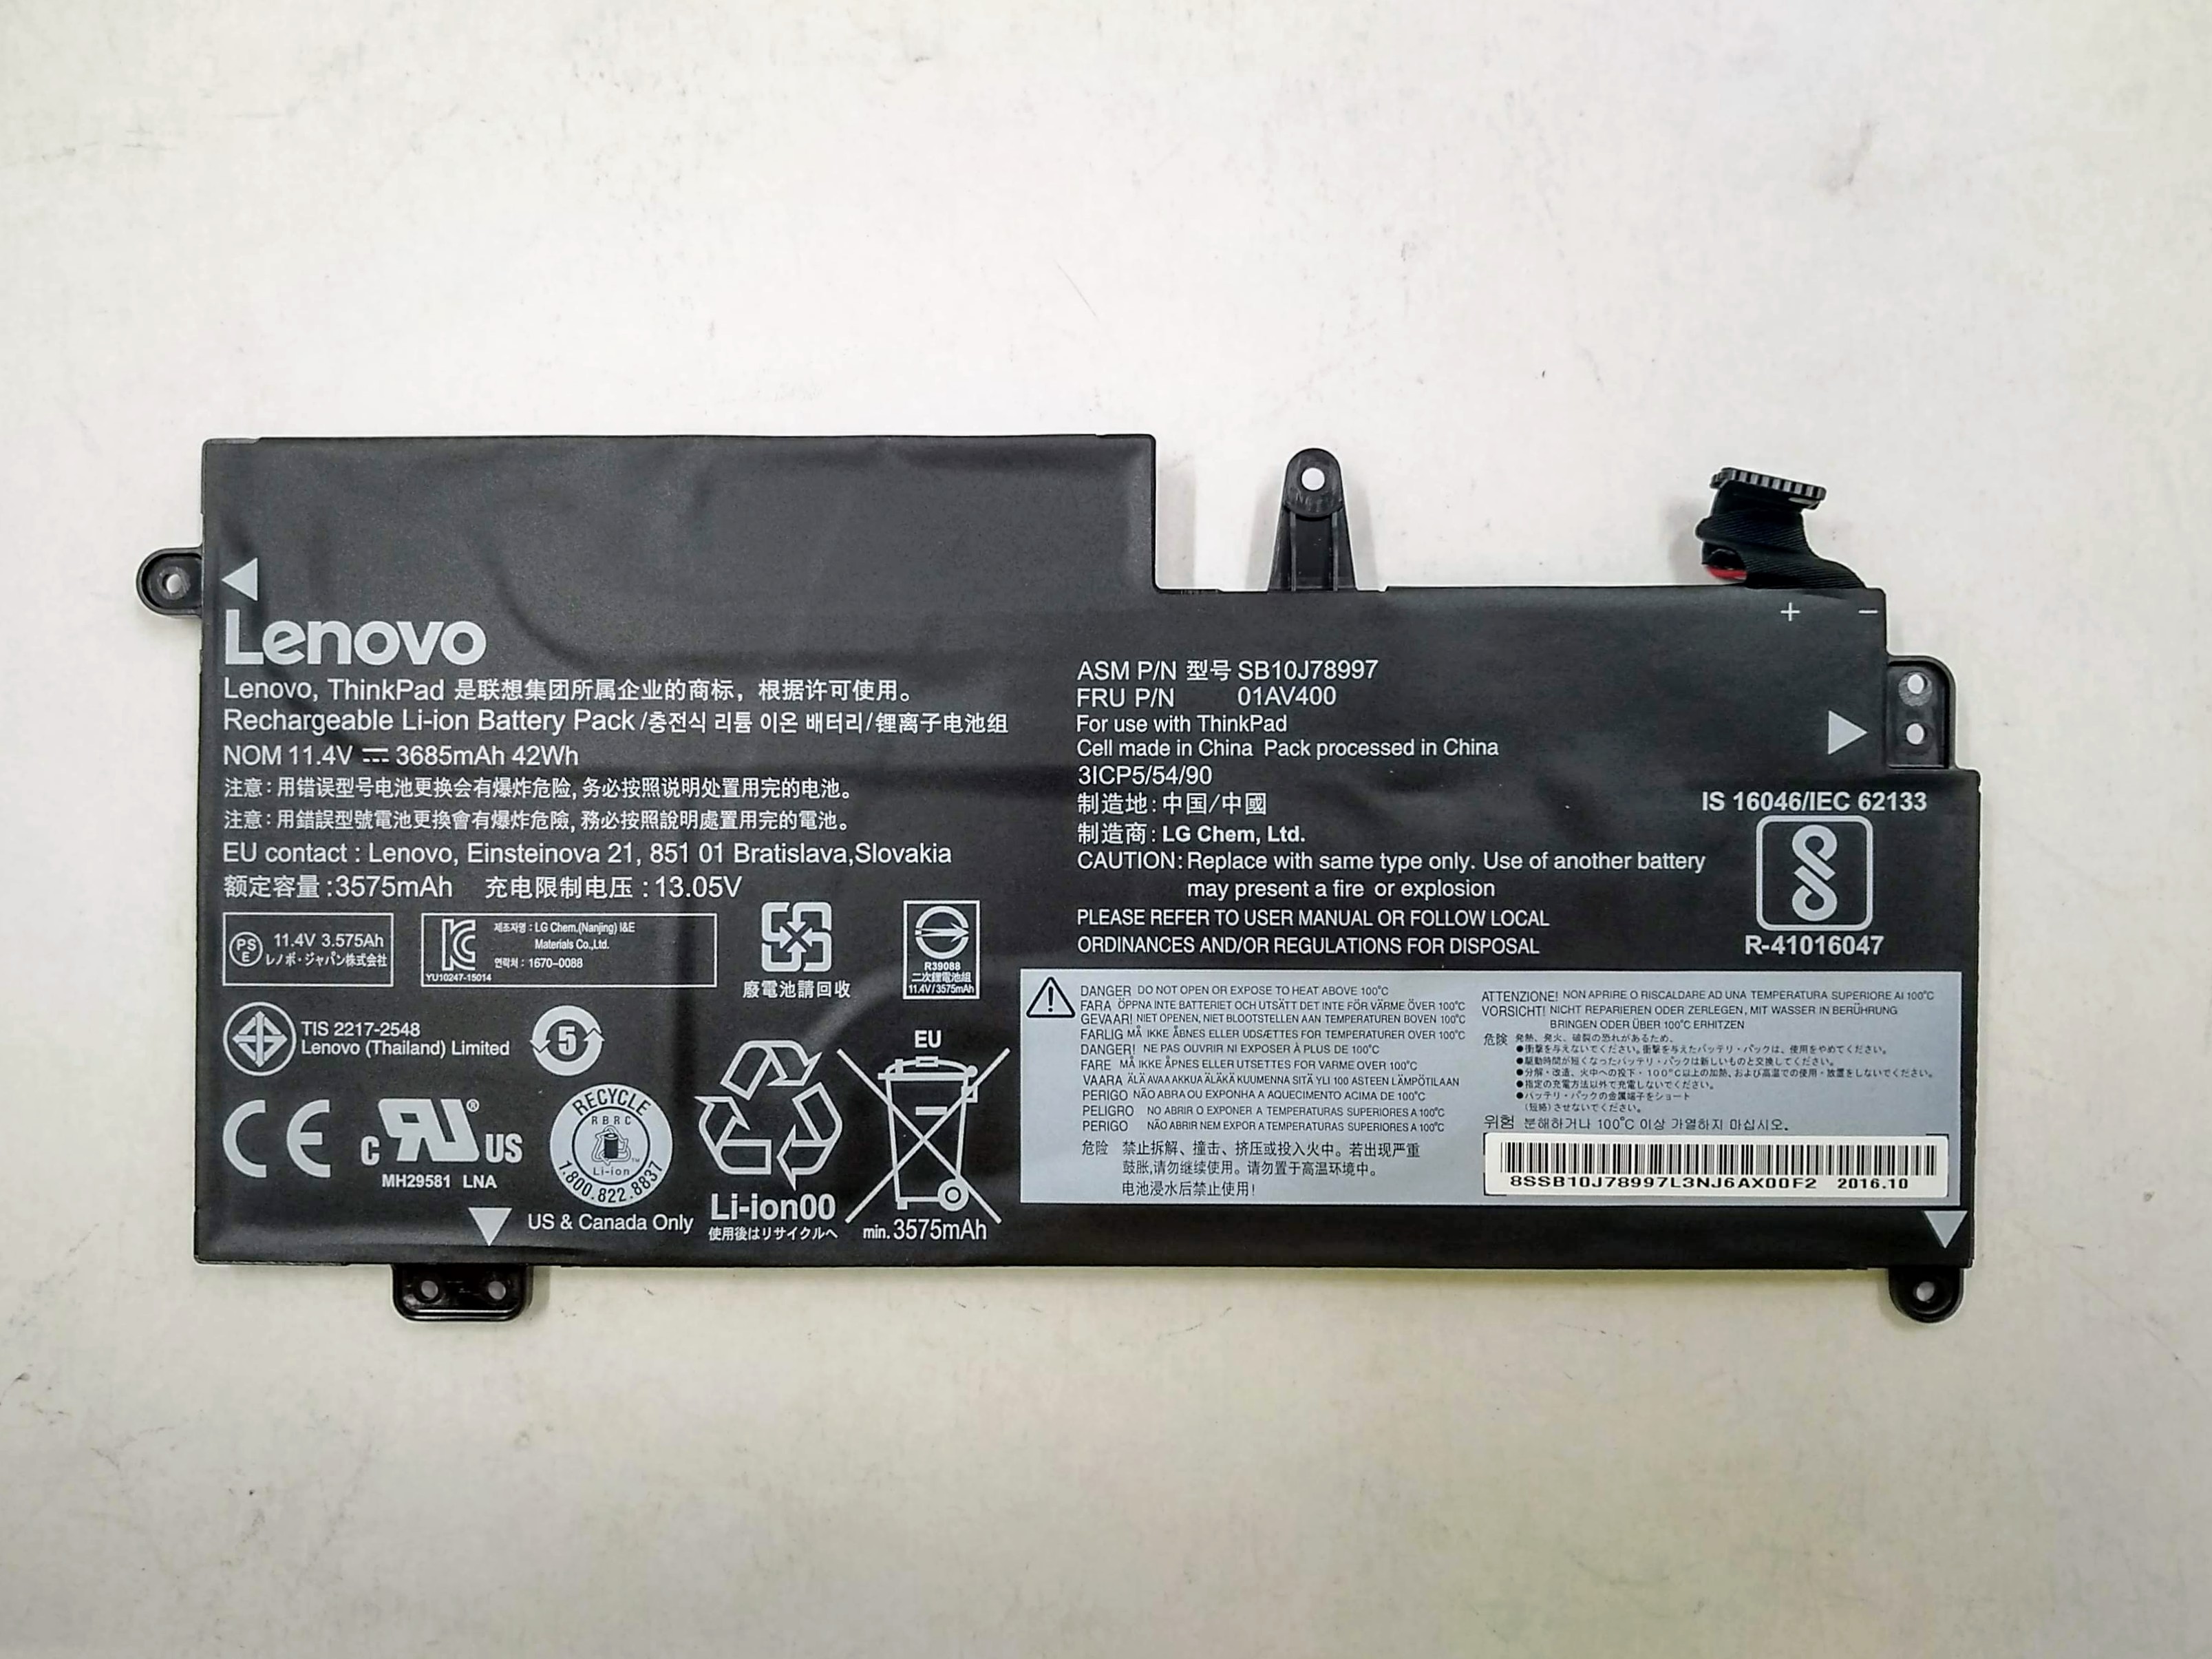 Lenovo 13 (20GJ, 20GK) Laptop (ThinkPad) BATTERY - 01AV400